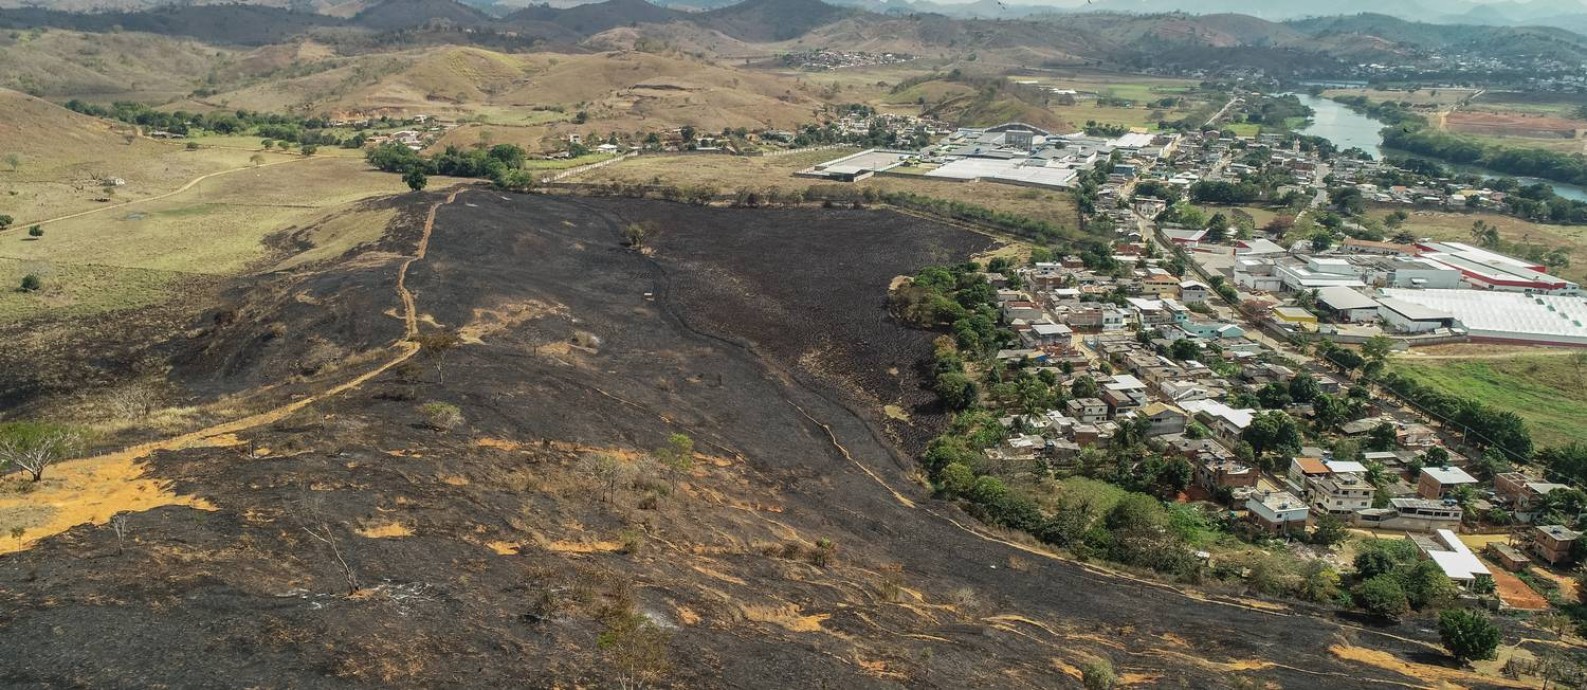 Vegetação lambida pelo fogo em morros próximos à cidade de Itaperuna, no Noroeste Fluminense Foto: Brenno Carvalho / Agência O Globo